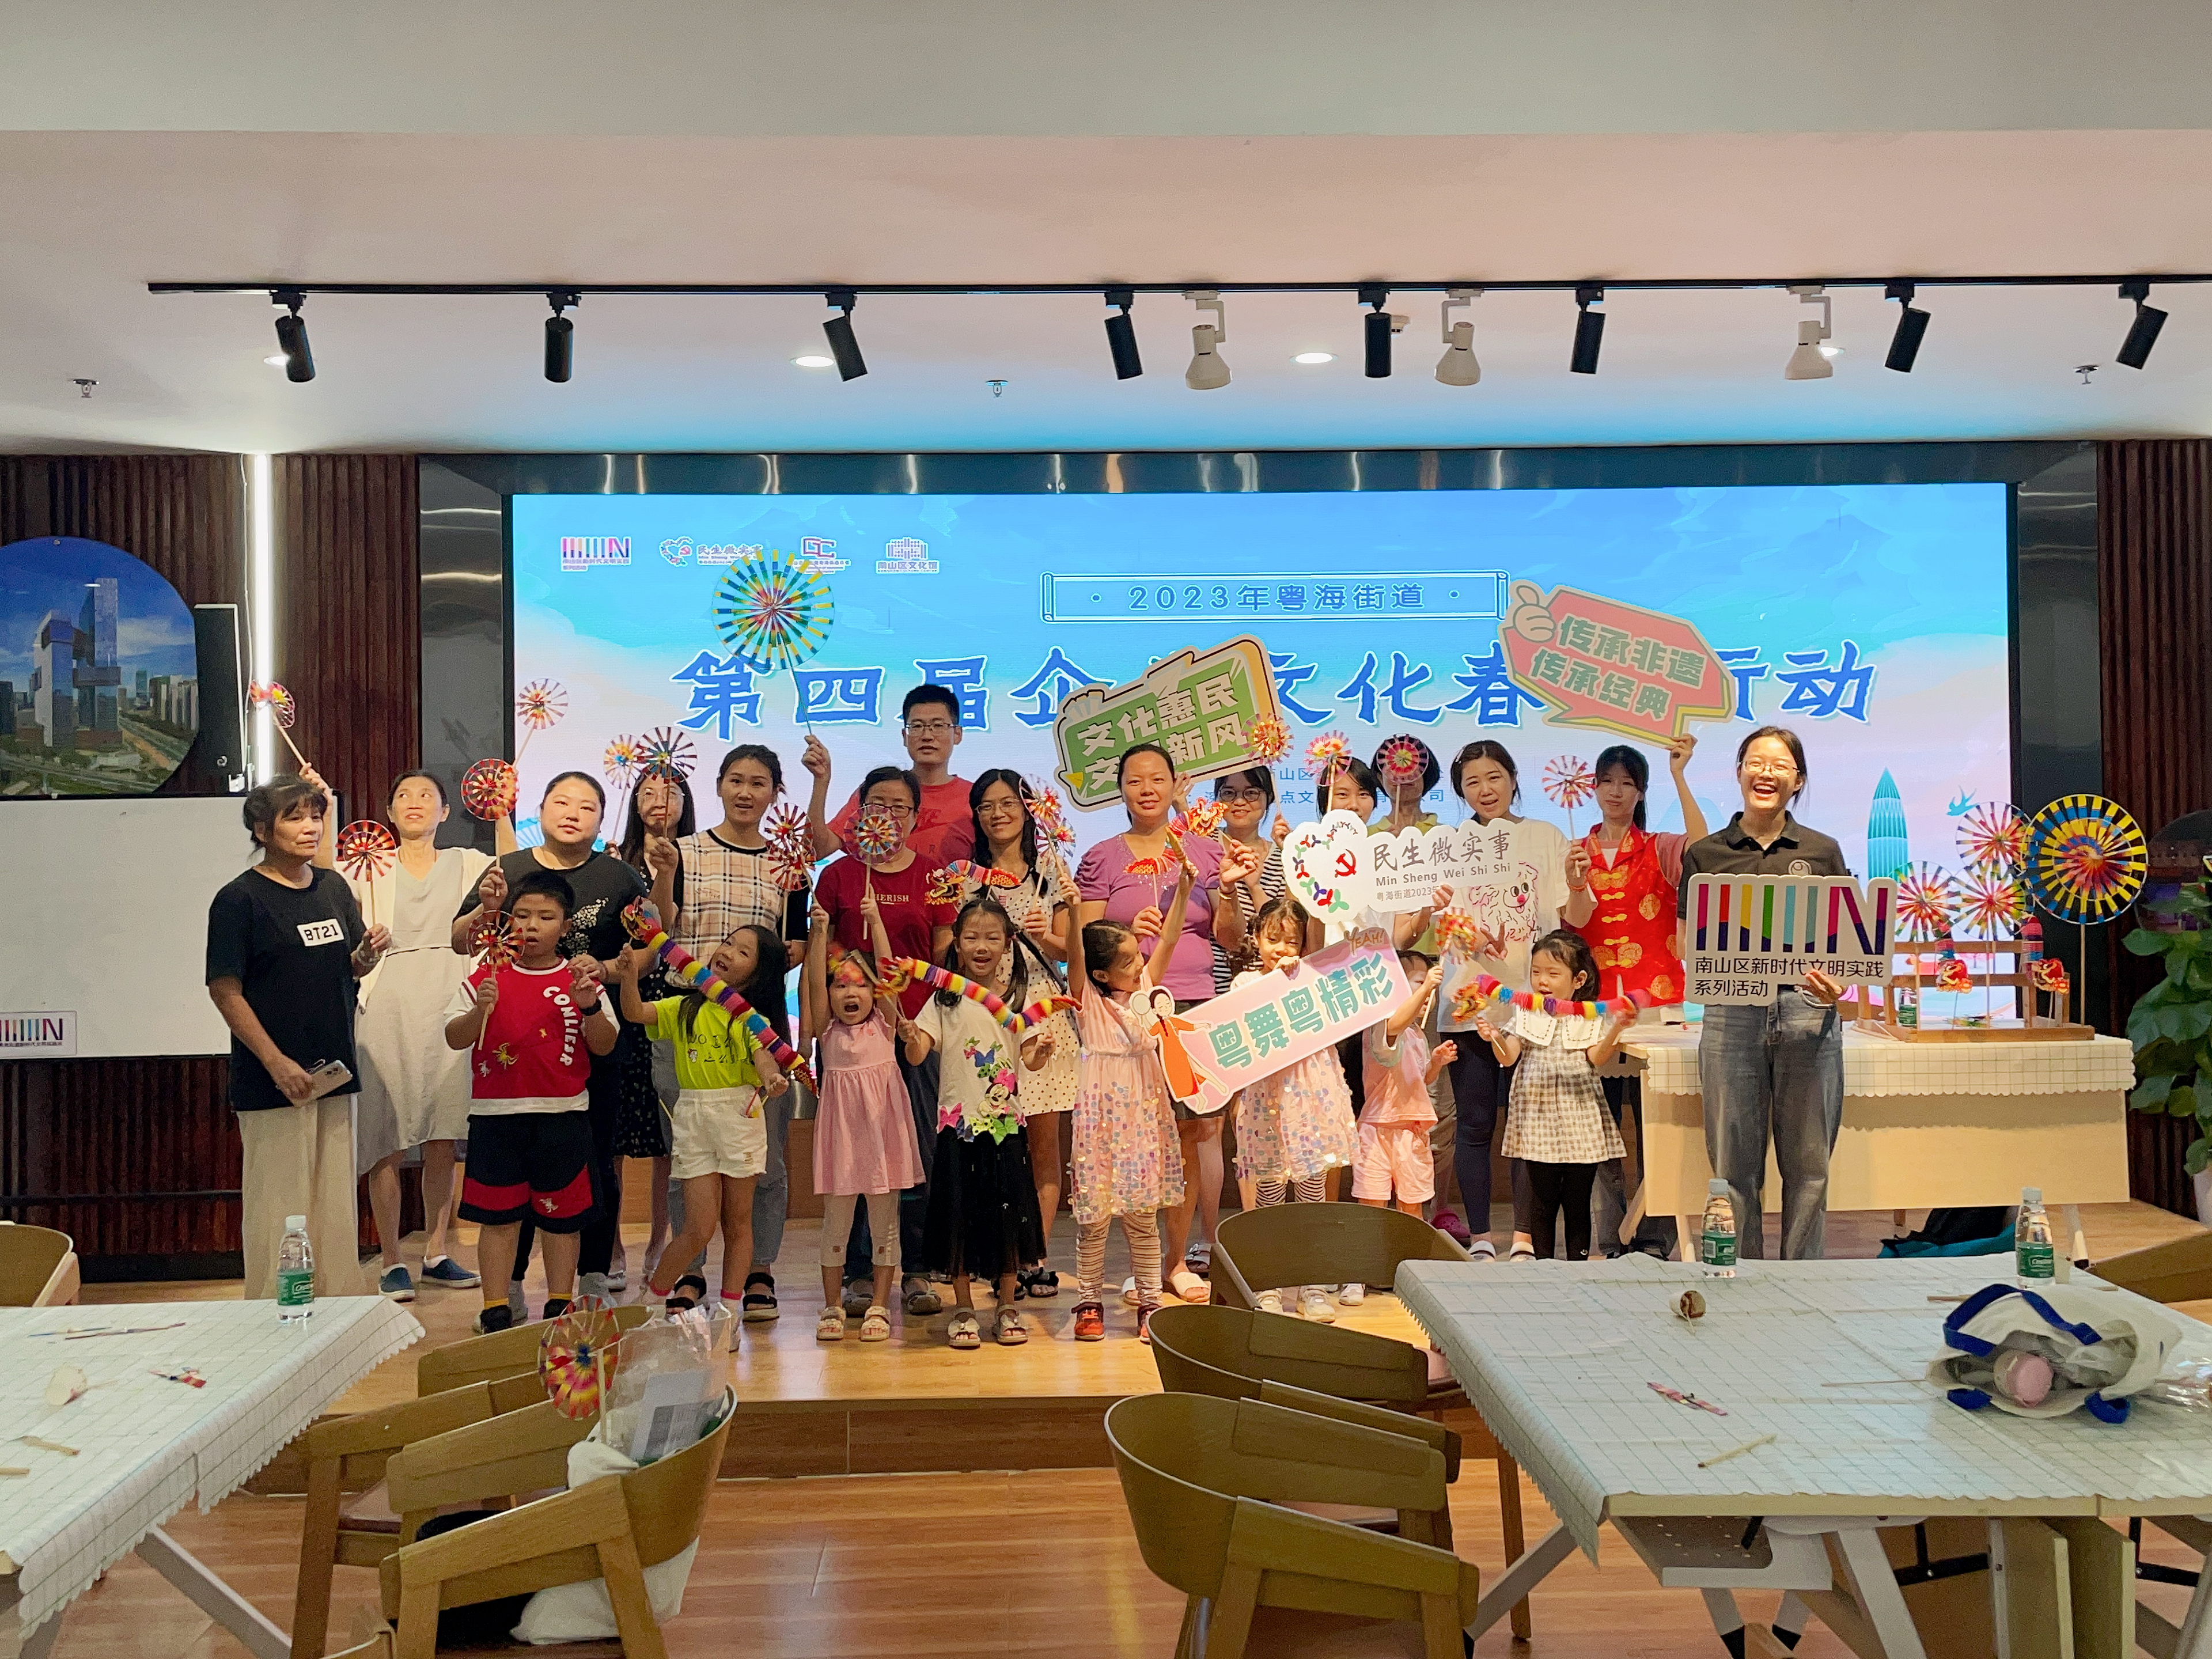 粤海街道开展第四届“企业文化春雨行动”，130多场活动服务企业员工和社区居民